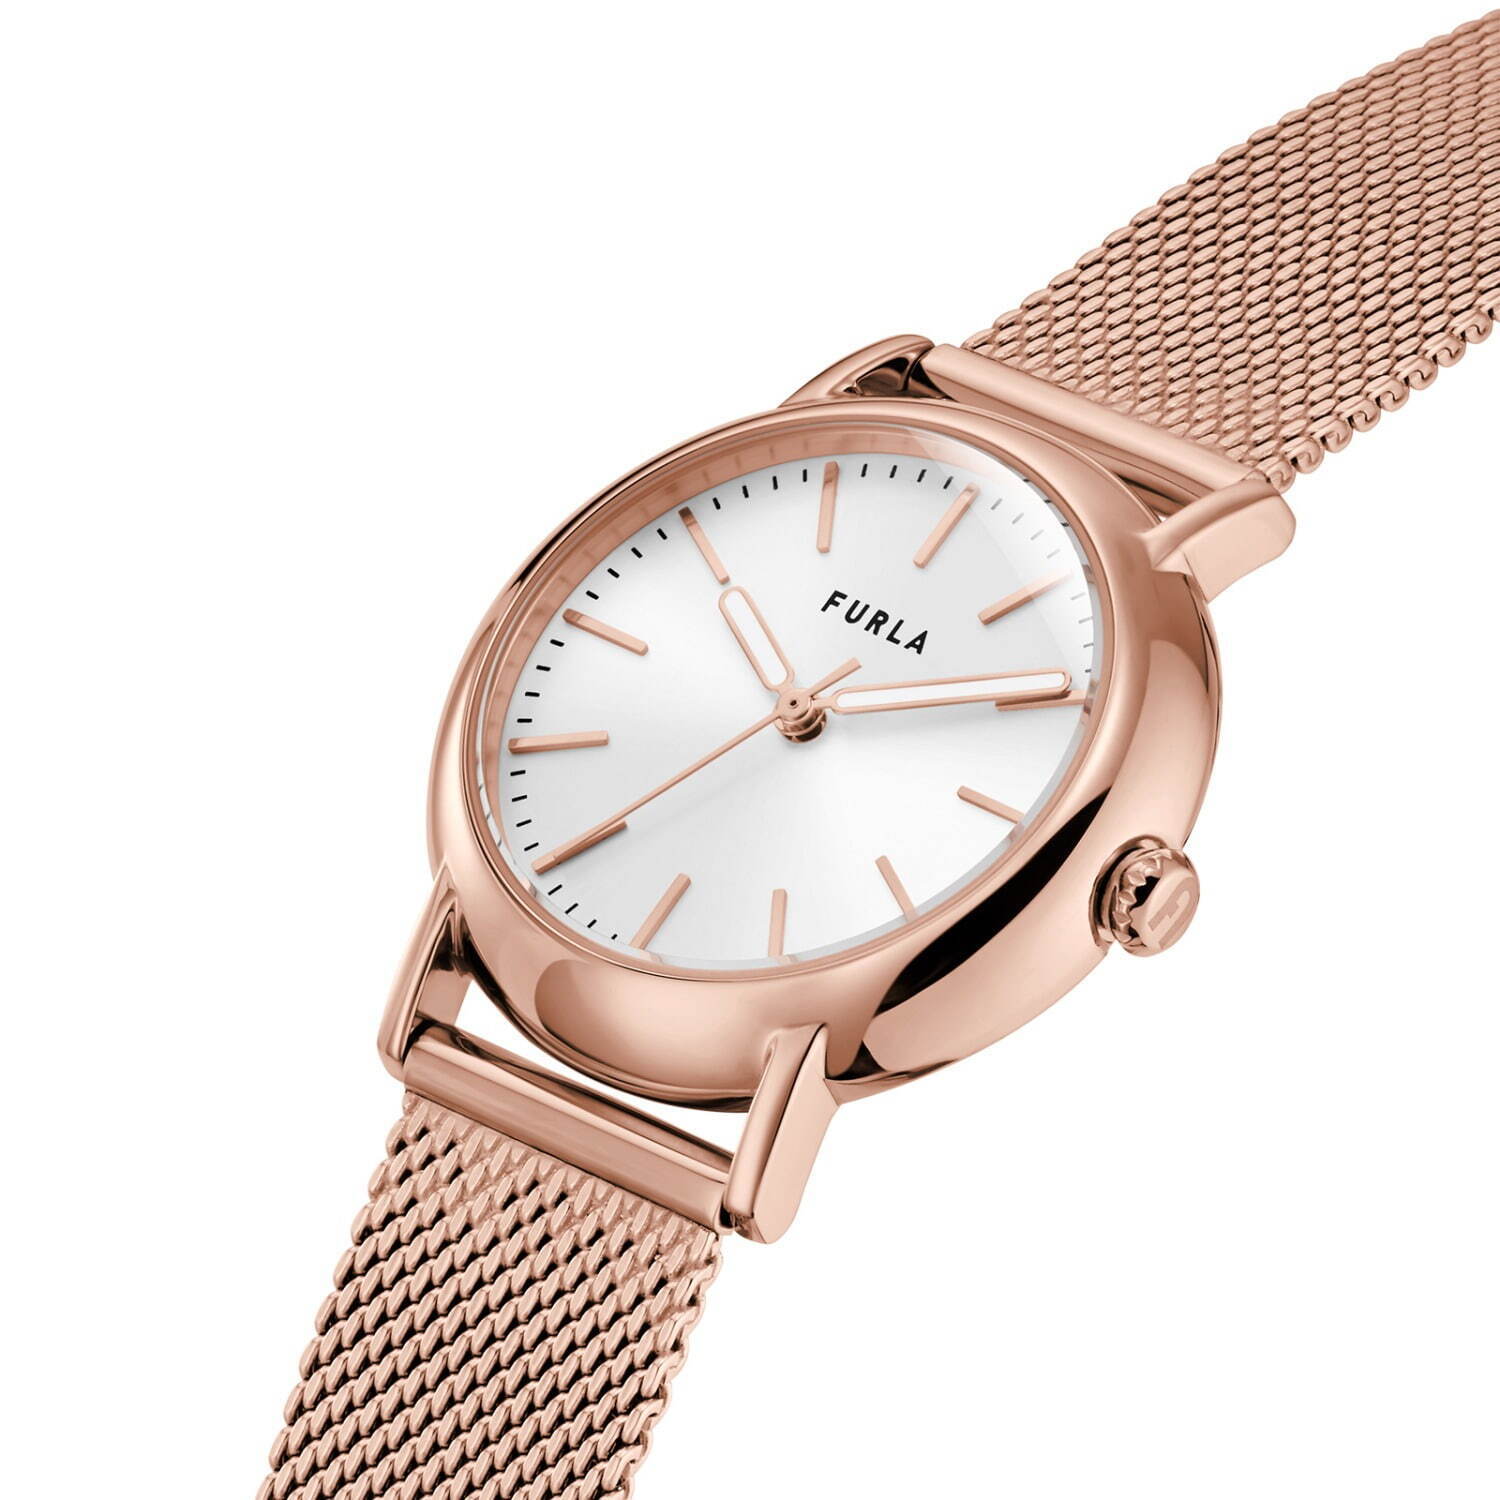 フルラ“淡いピンクトーン”の新作腕時計「フルラ イージー シェイプ 